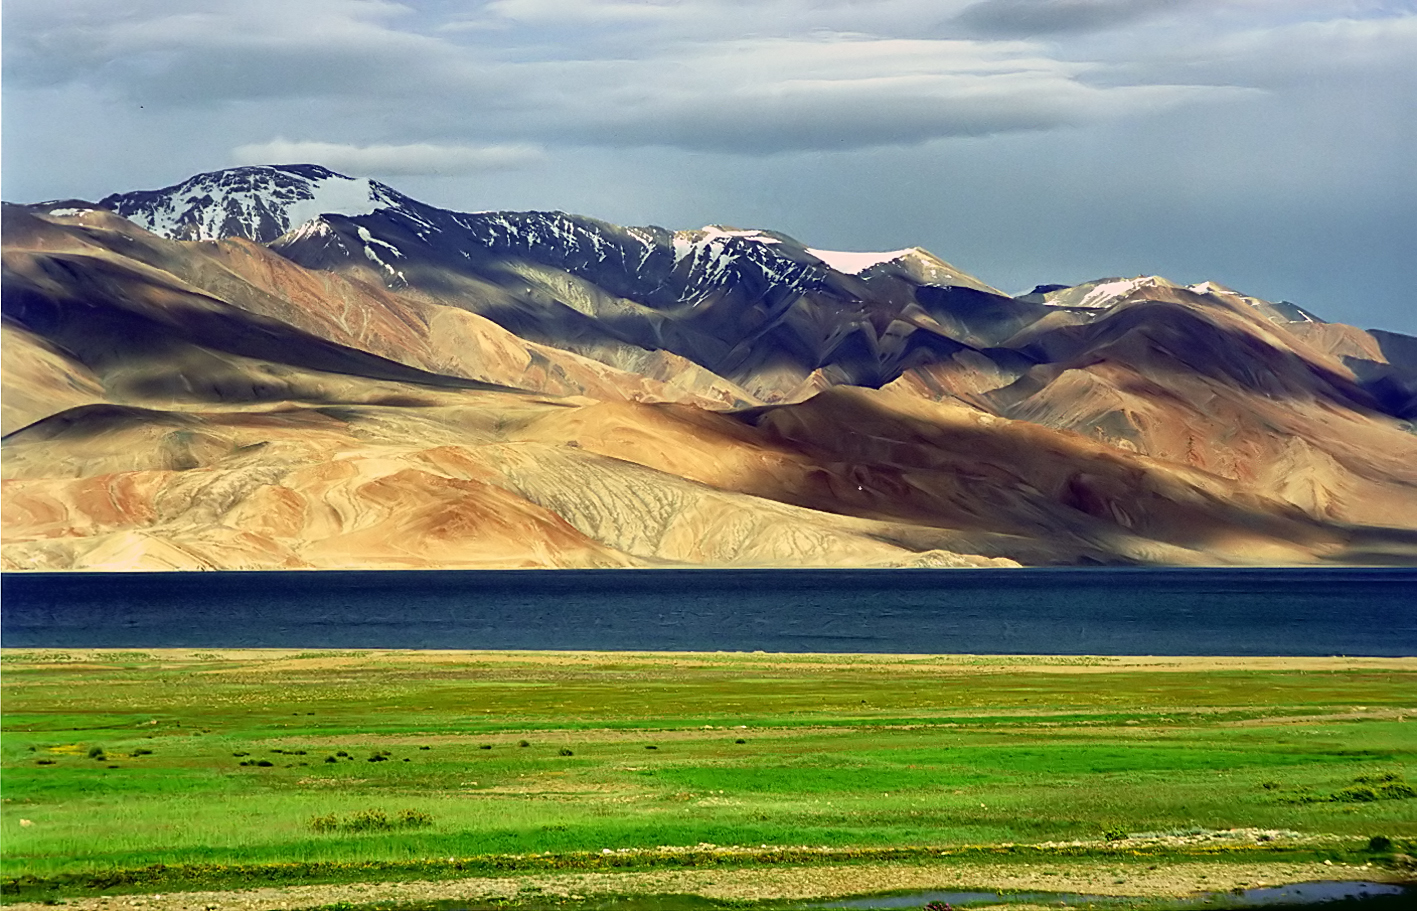 Inde - Karakoram, plateau tibétain ouest, steppe alpine